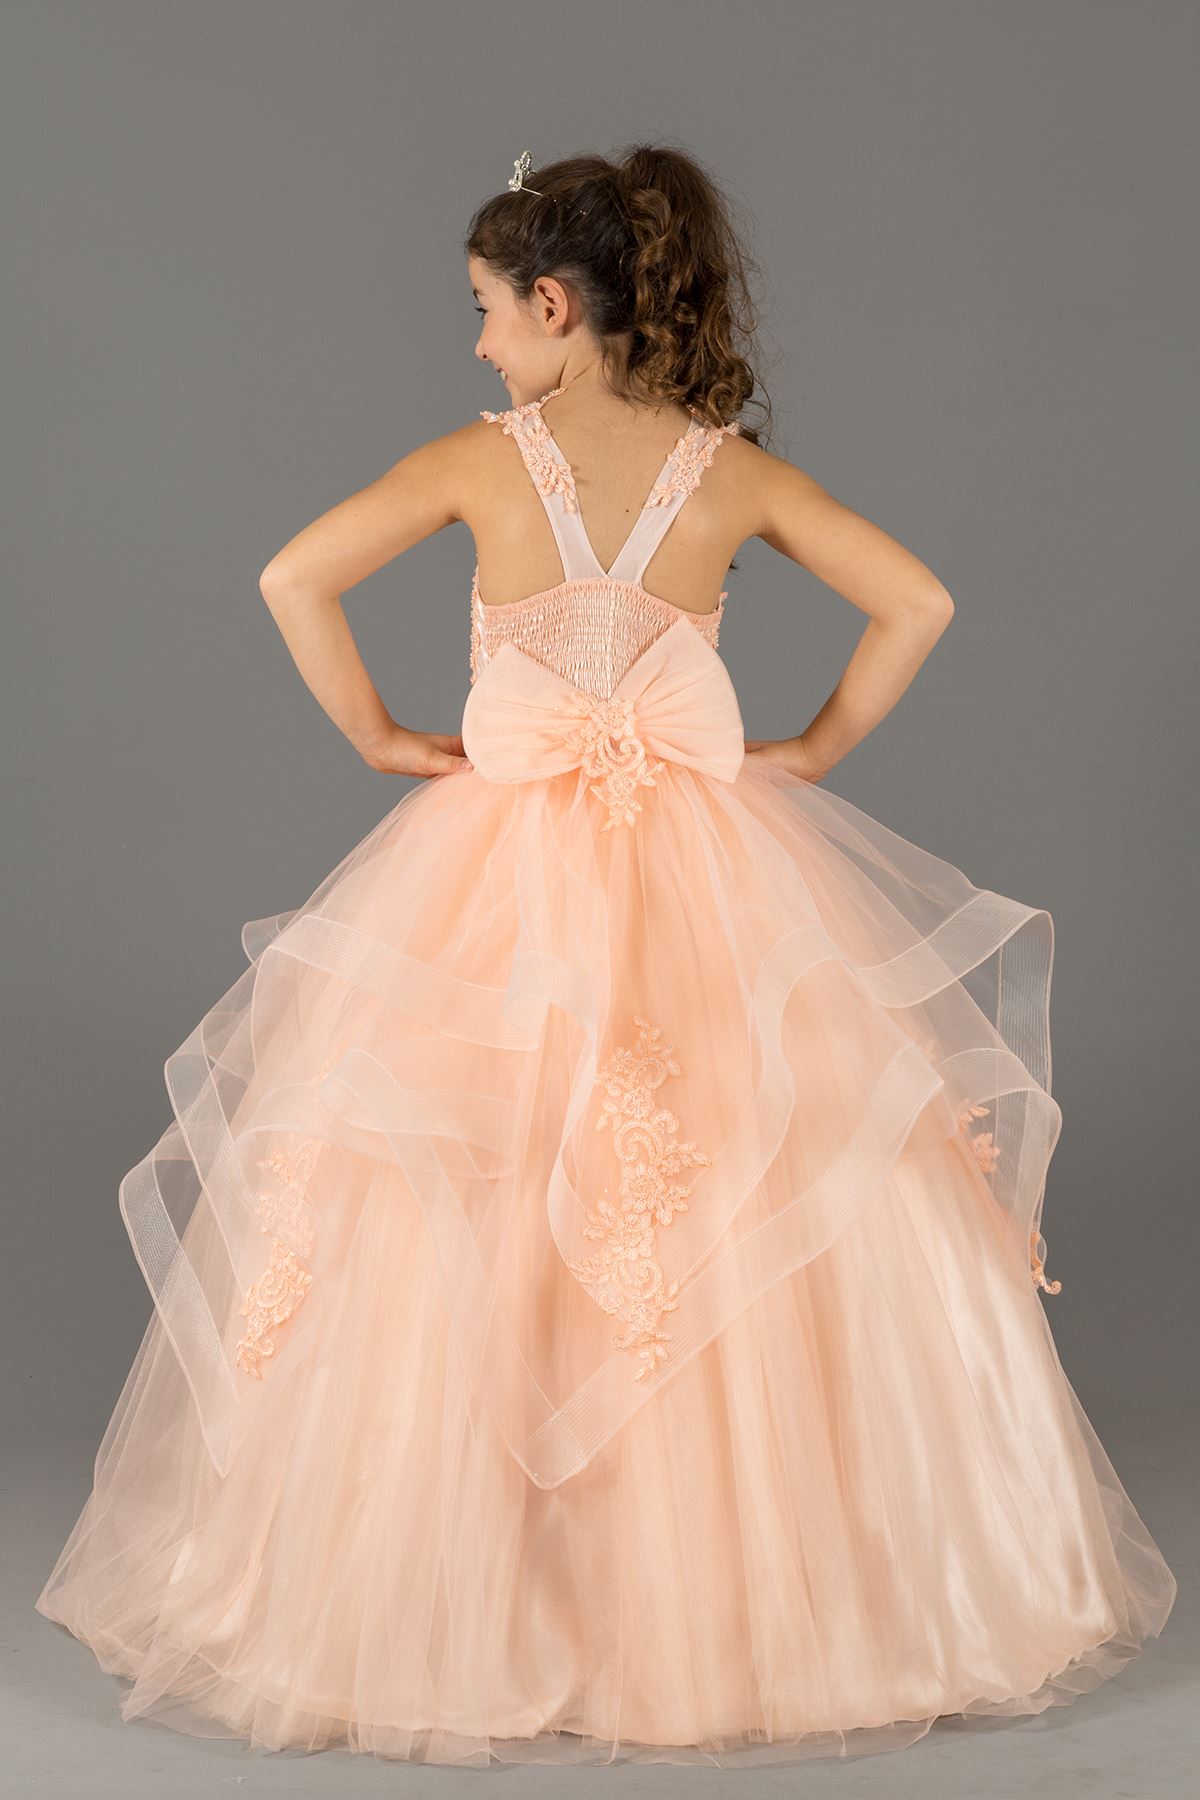 שמלת הערב של הבחורה הפלומתית עם שכבות של חצאית פרטים ומכשיר רקום 578 סלמון